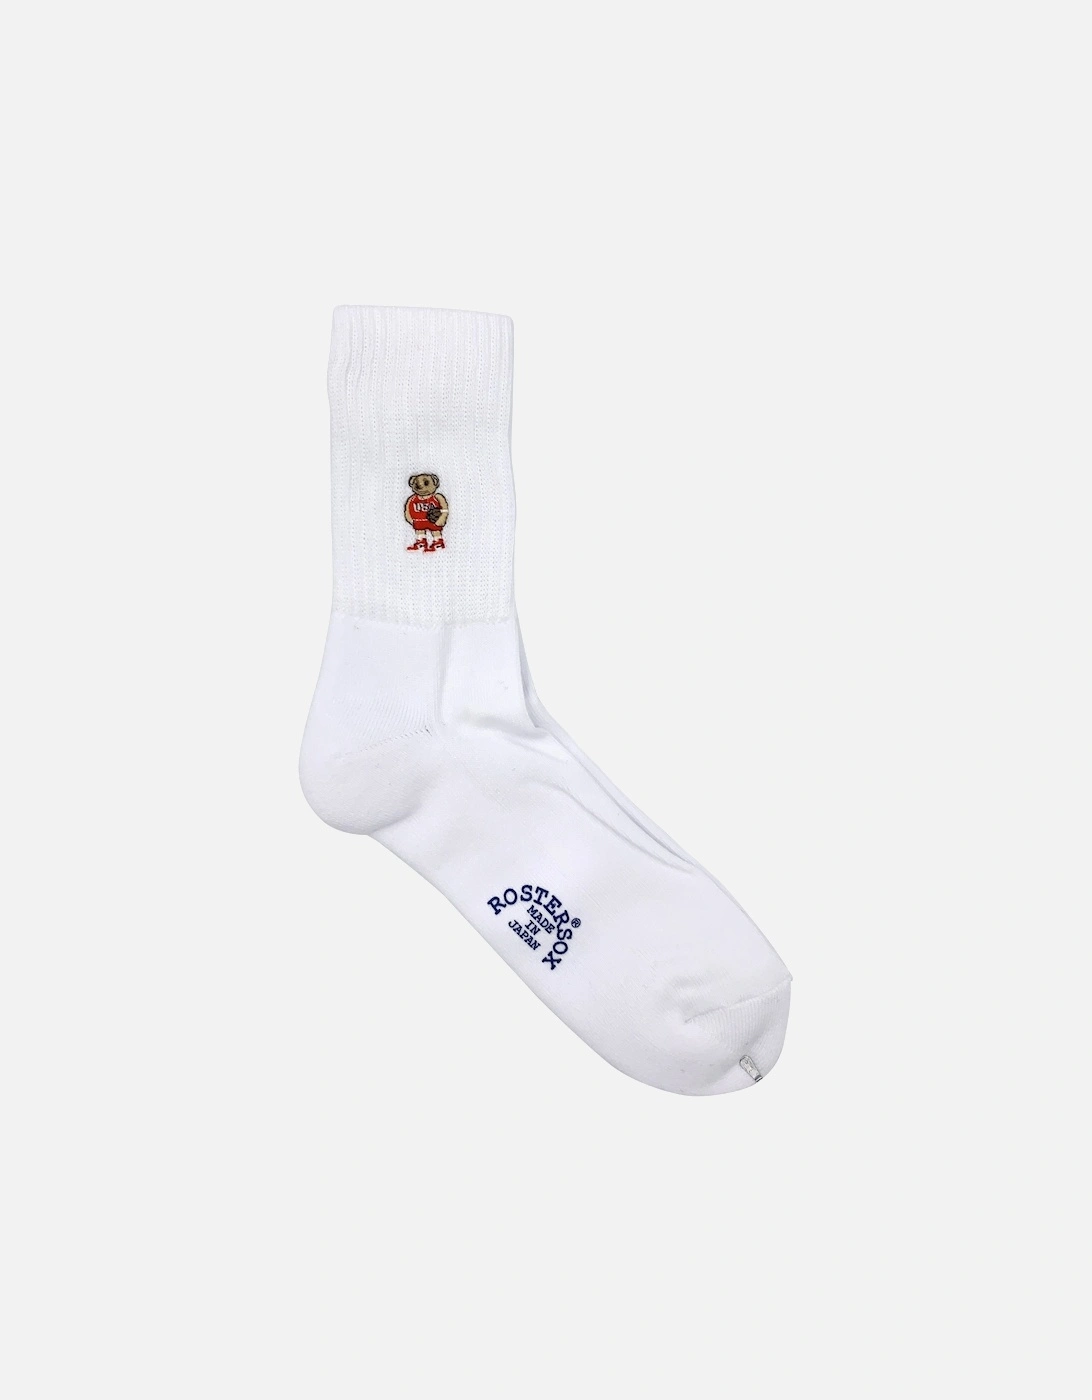 Rostersox's Bear Socks - White, 4 of 3